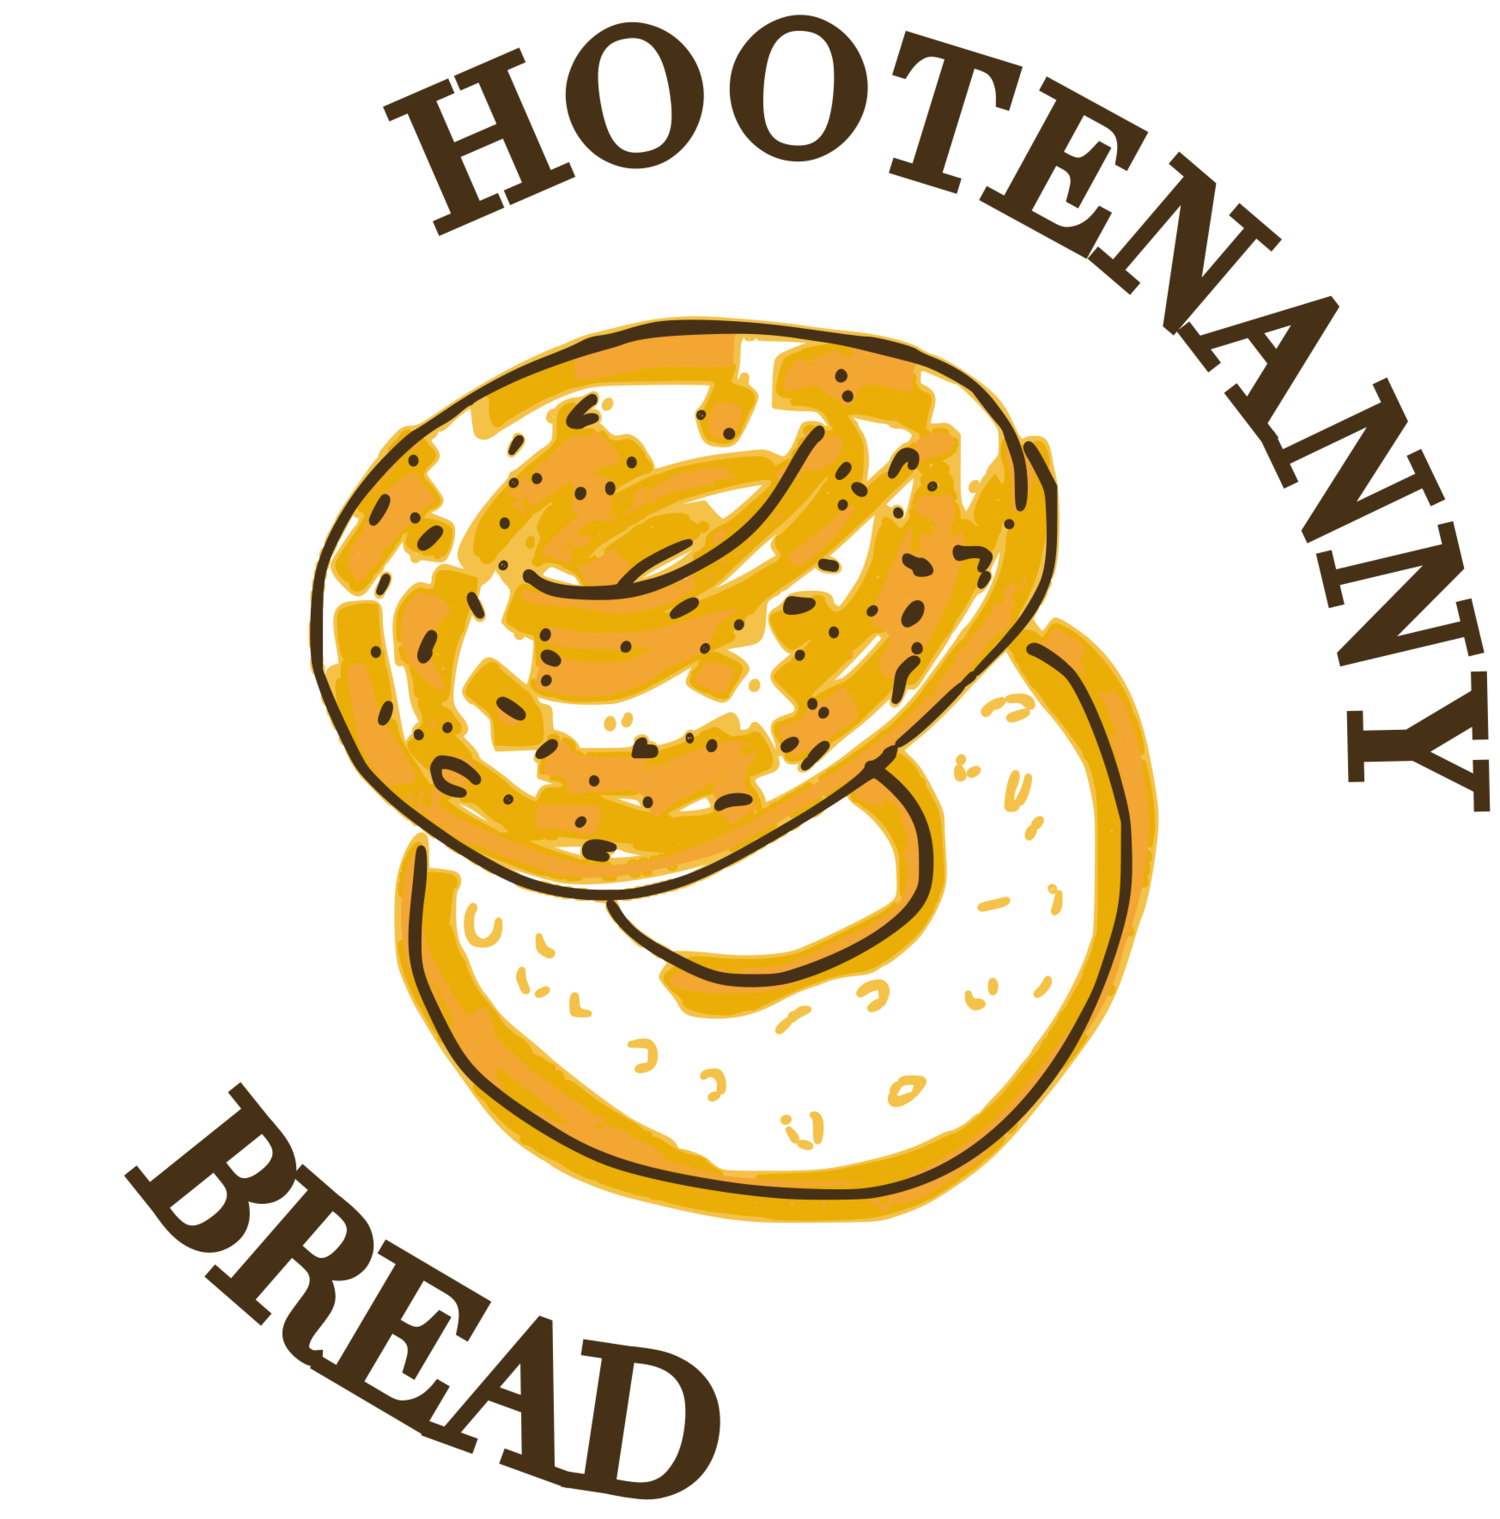 Hootenanny Bread